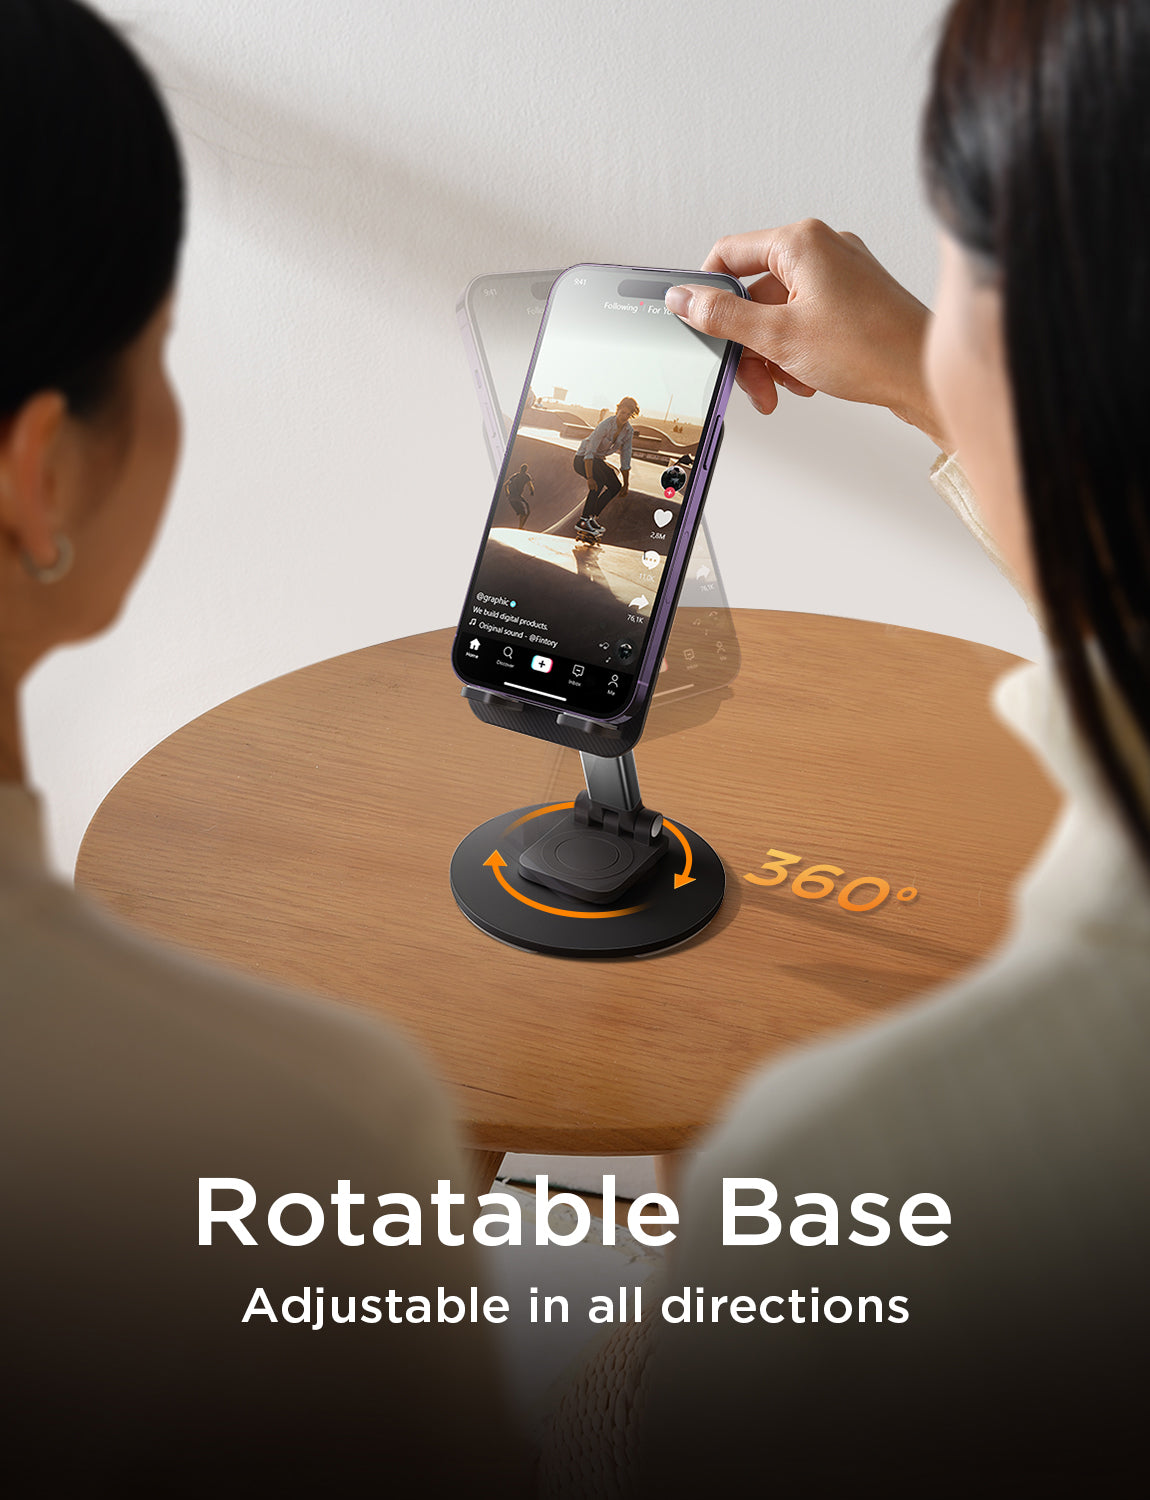 Lisen Foldable Phone Stand for Desk